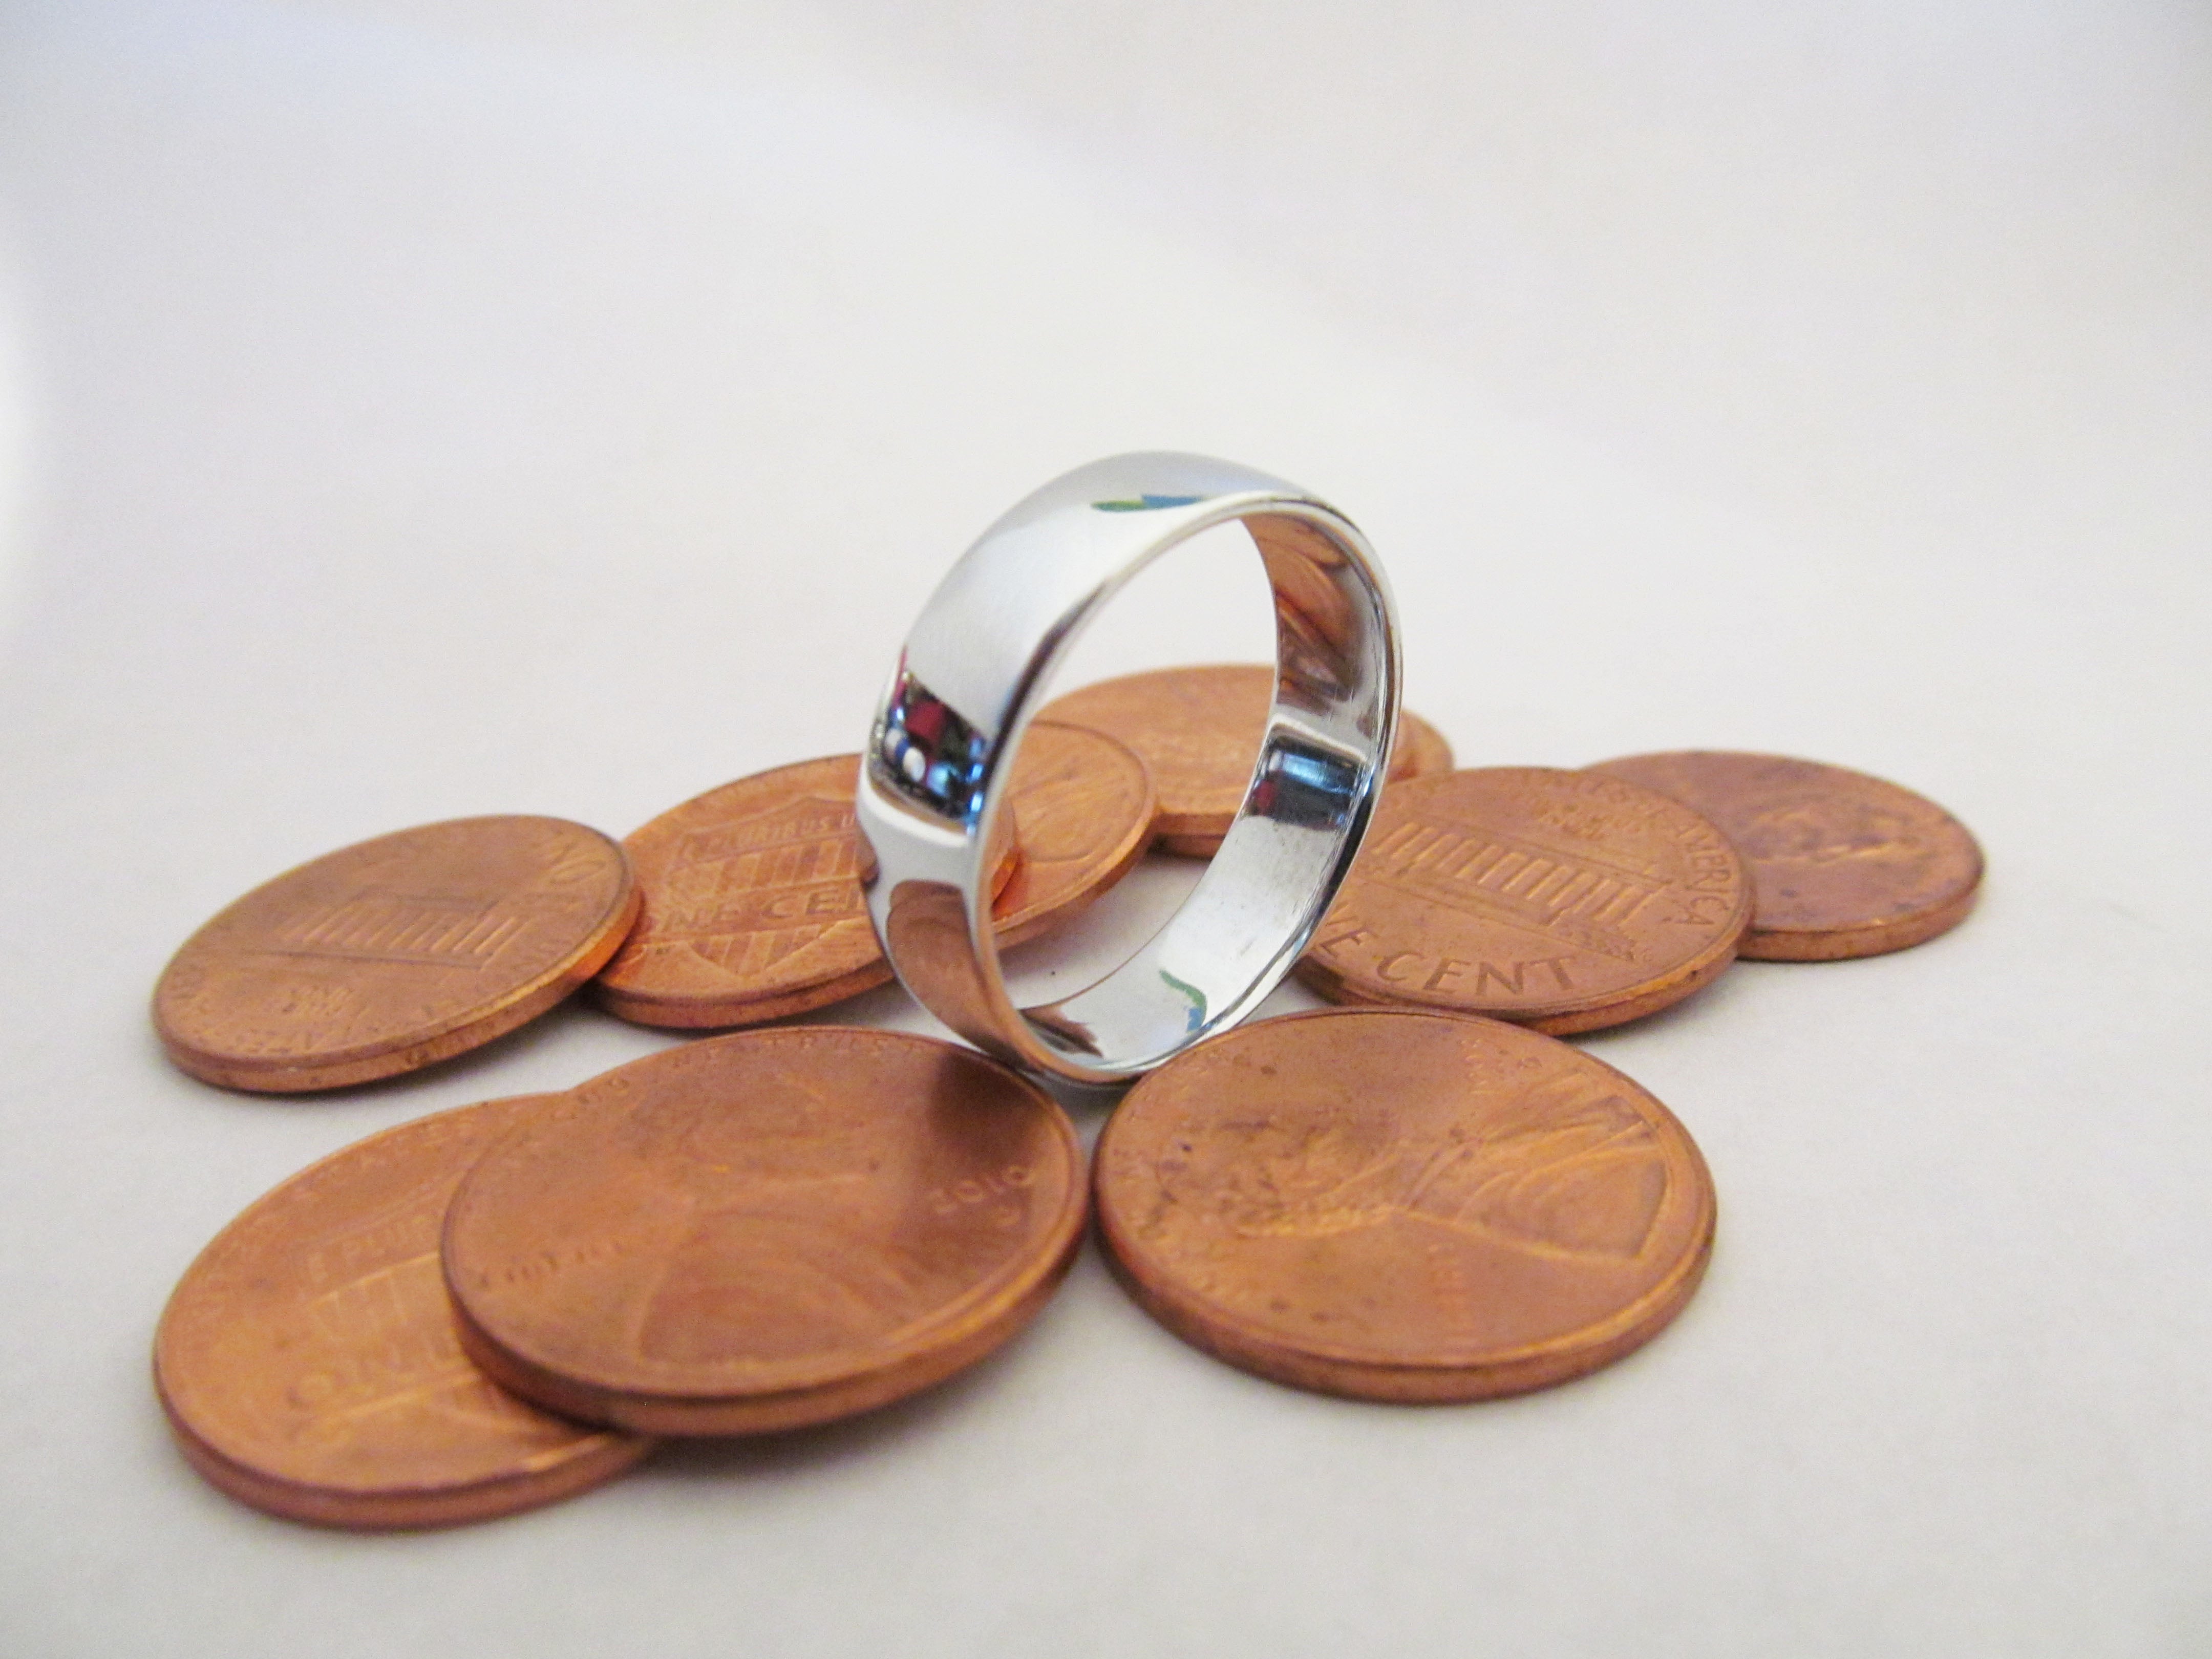 Make a Ring by Melting Pennies. | Metal crafts, Metal, Metal working